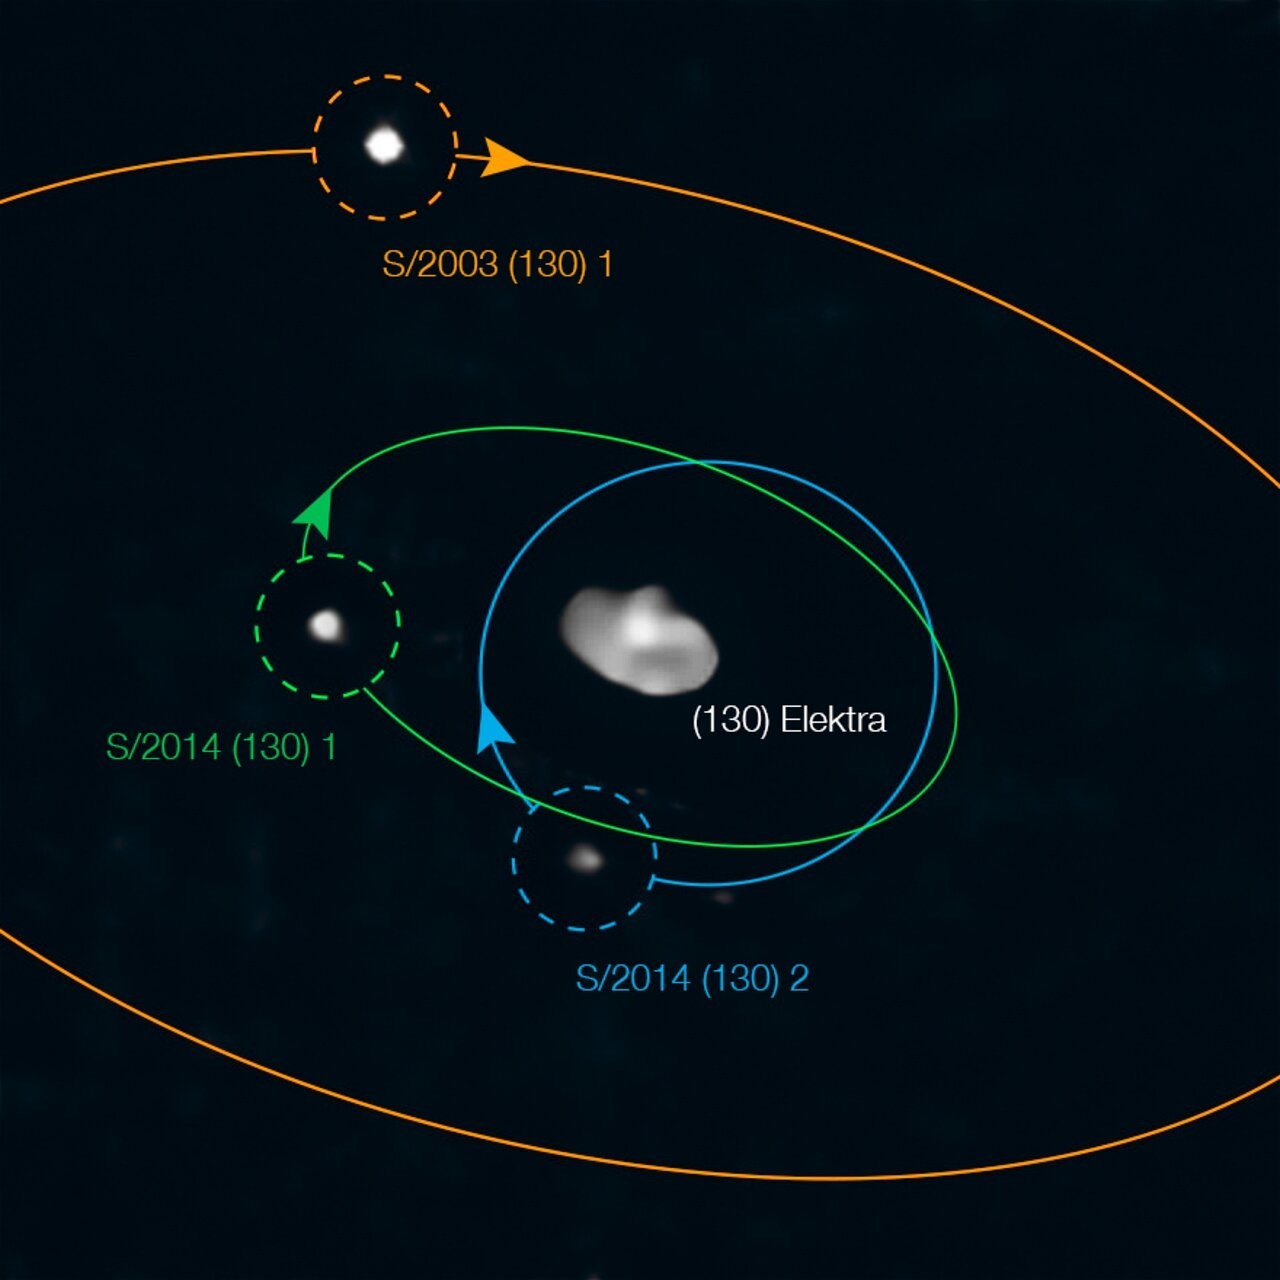 İlk dörtlü asteroit sistemi keşfedildi